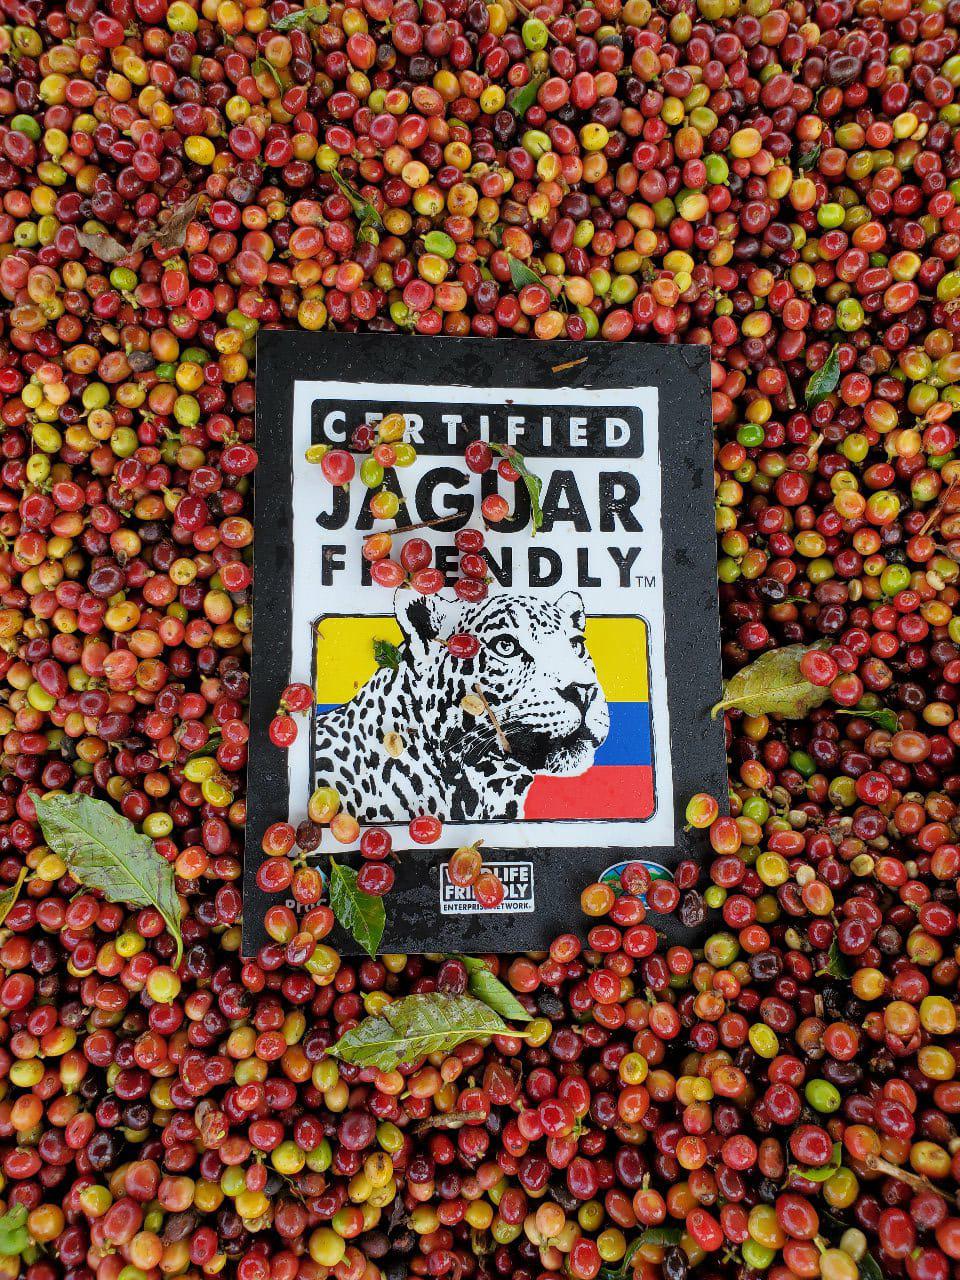 $!El café certificado como Jaguar Friendly, cultivado en Colombia, ha logrado la exportación de 18 toneladas en el último año.